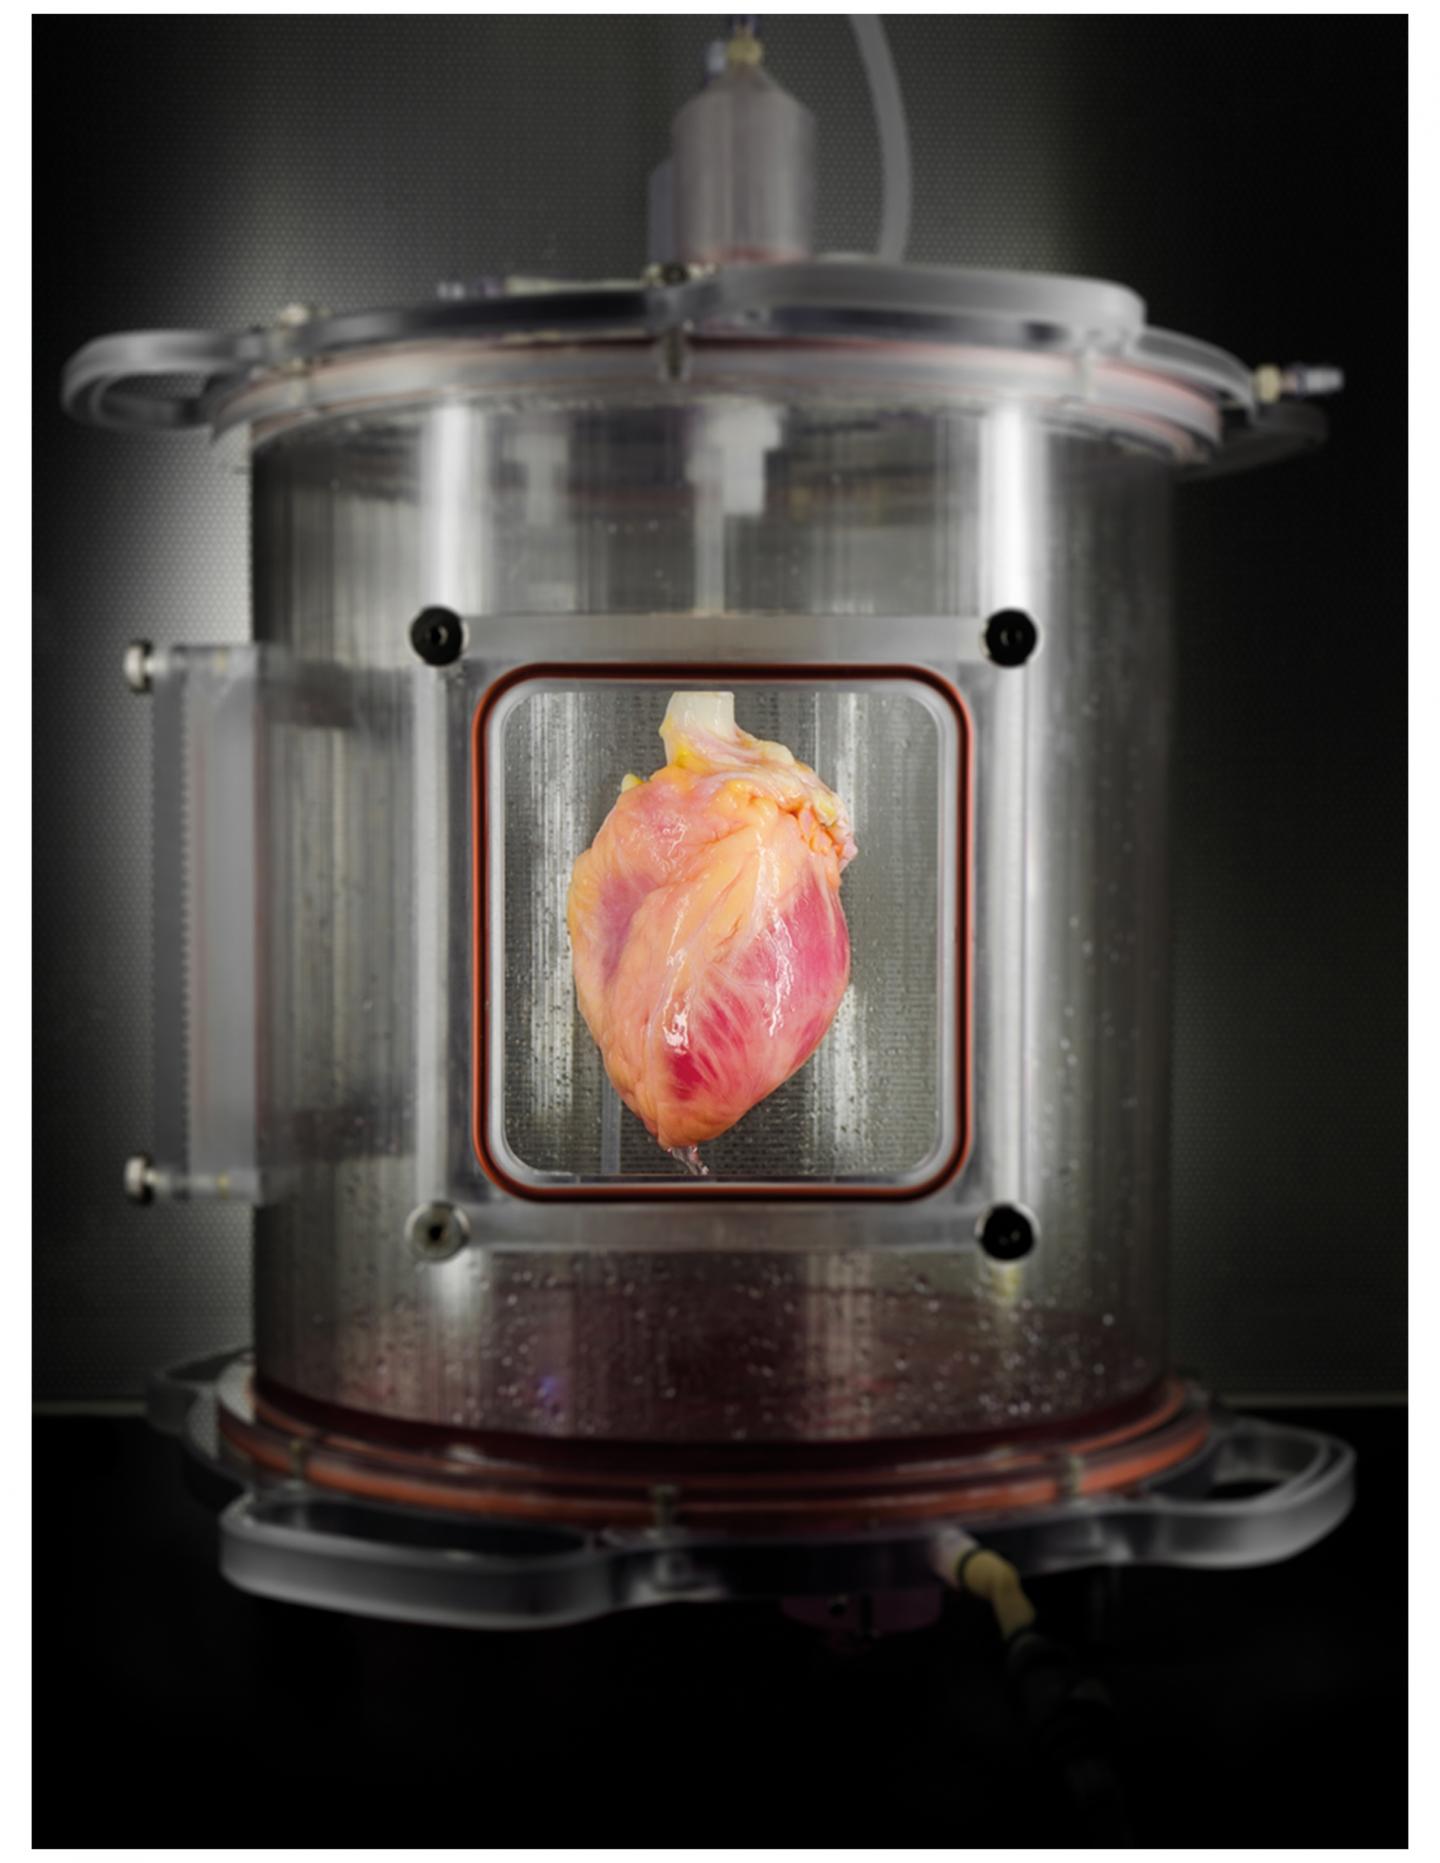 Partially Recellularized Heart Scaffold in Bioreactor